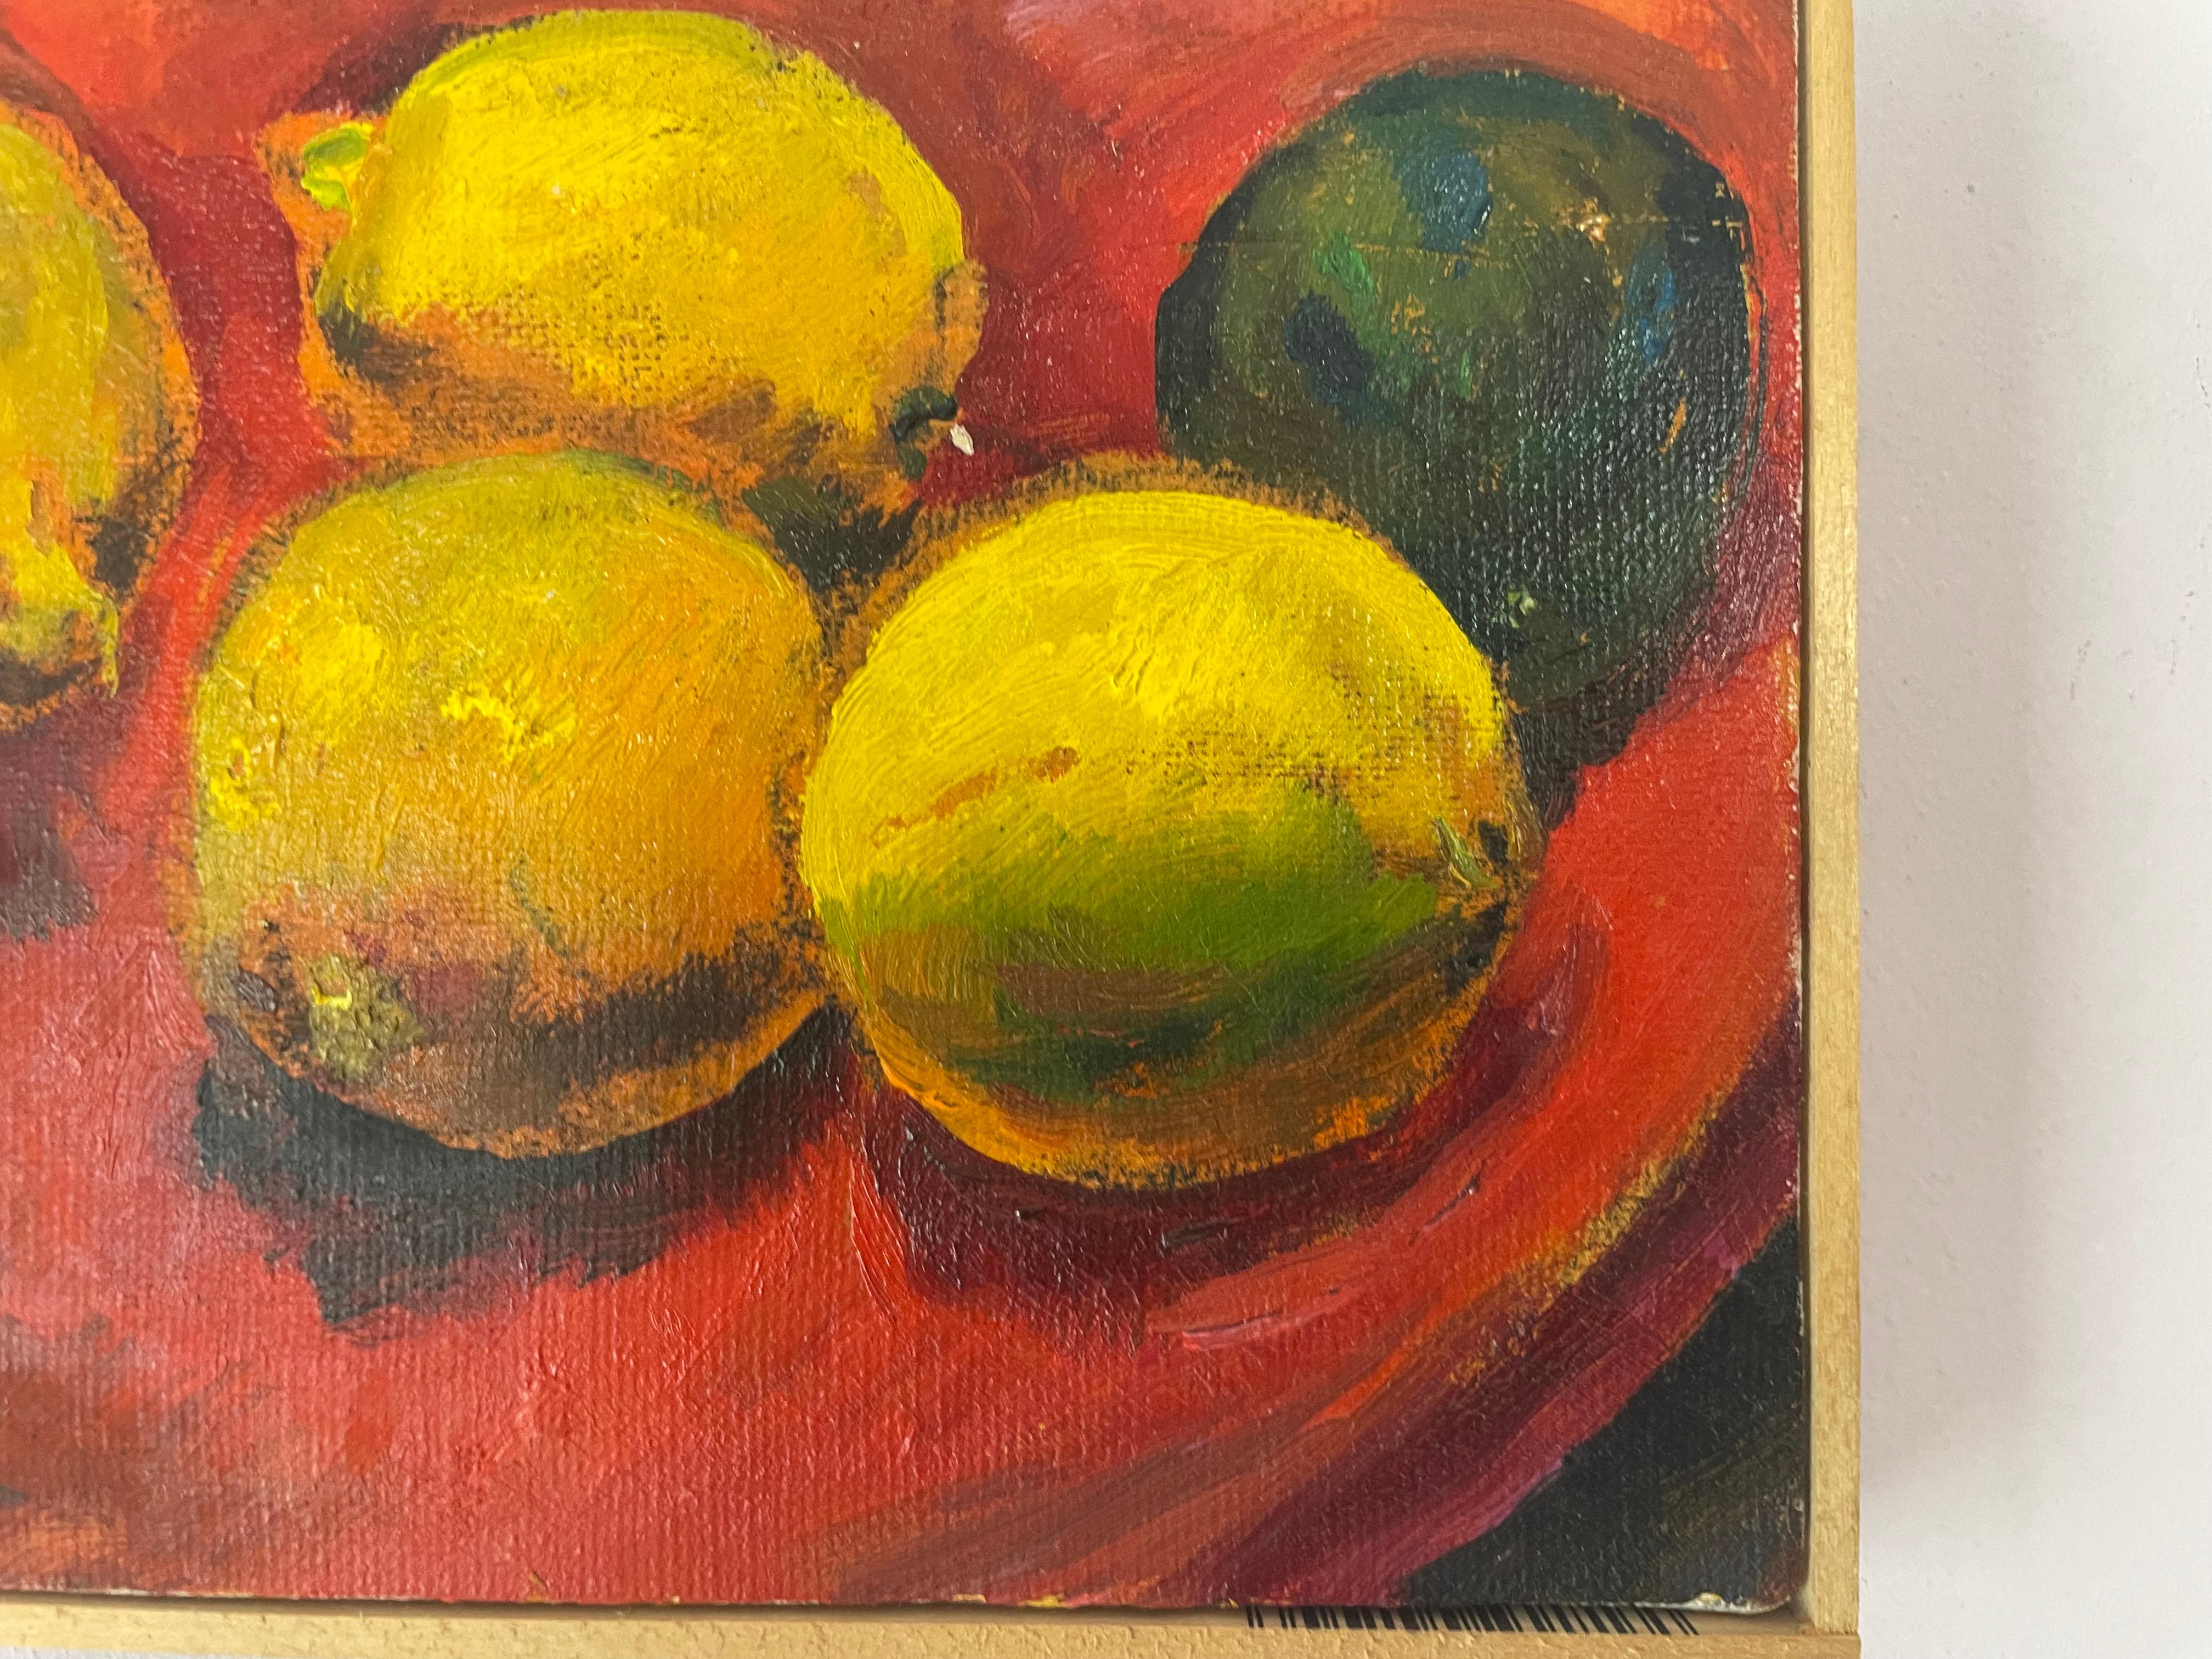 Zitronen und limetten – Painting von Ronald Shap